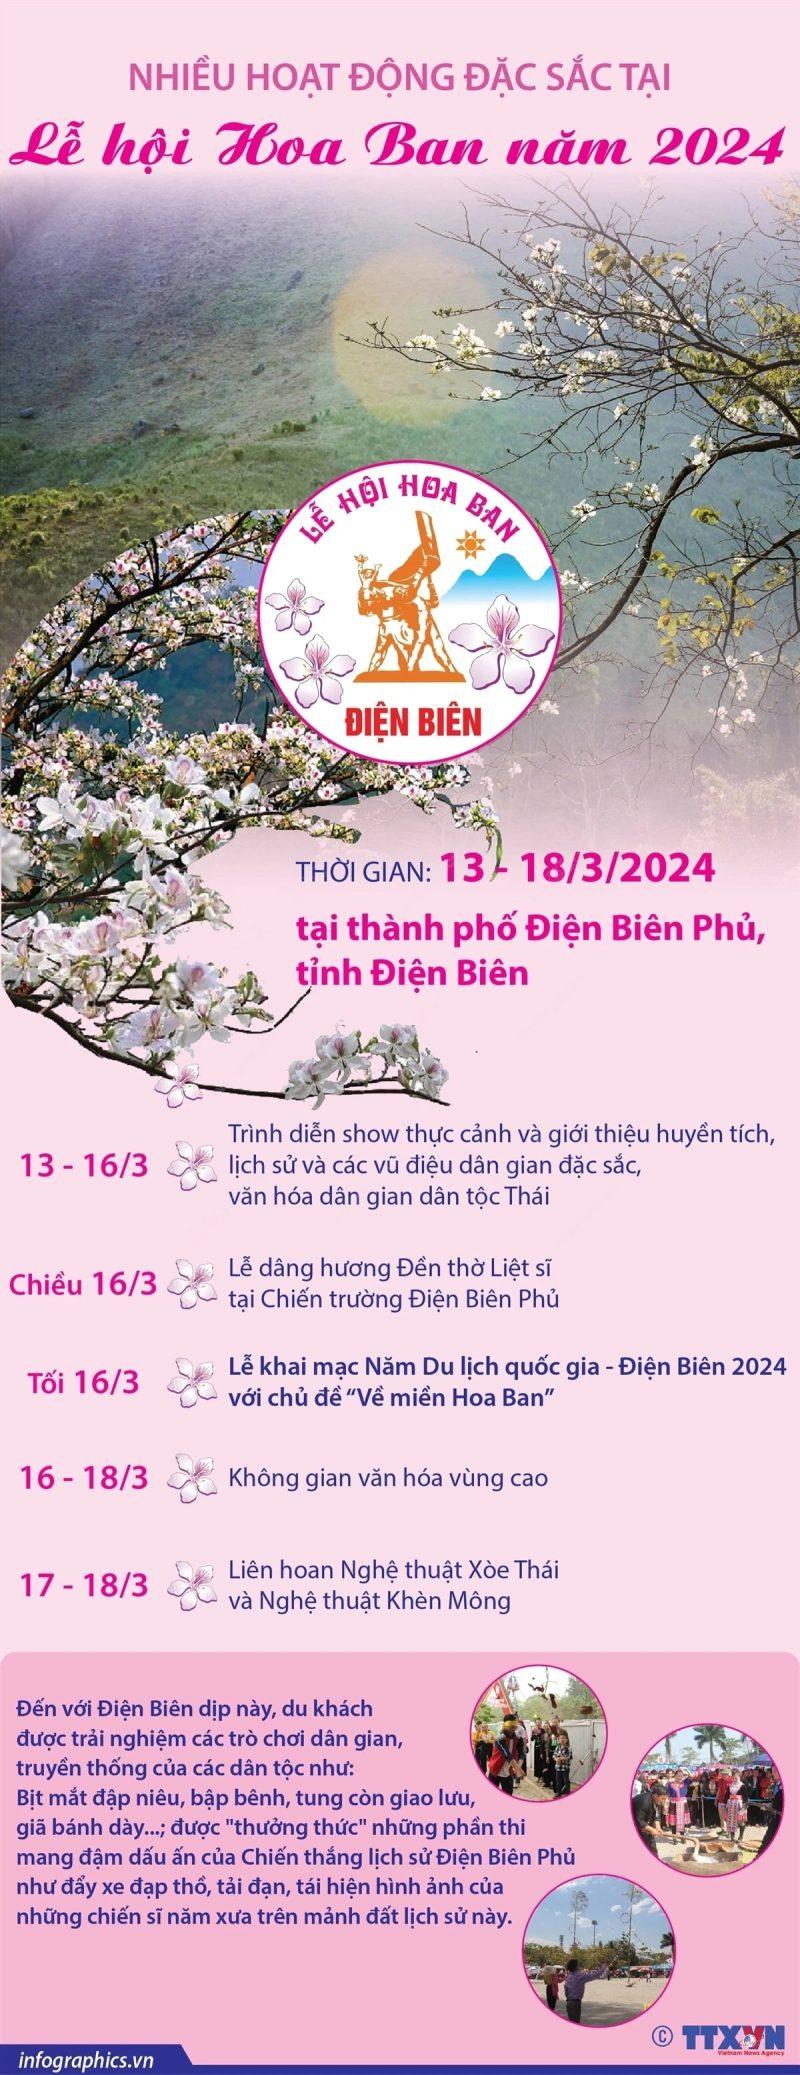 Nhieu hoat dong dac sac tai Le hoi Hoa Ban nam 2024 min 800x2075 - Nhiều hoạt động đặc sắc tại Lễ hội Hoa Ban năm 2024